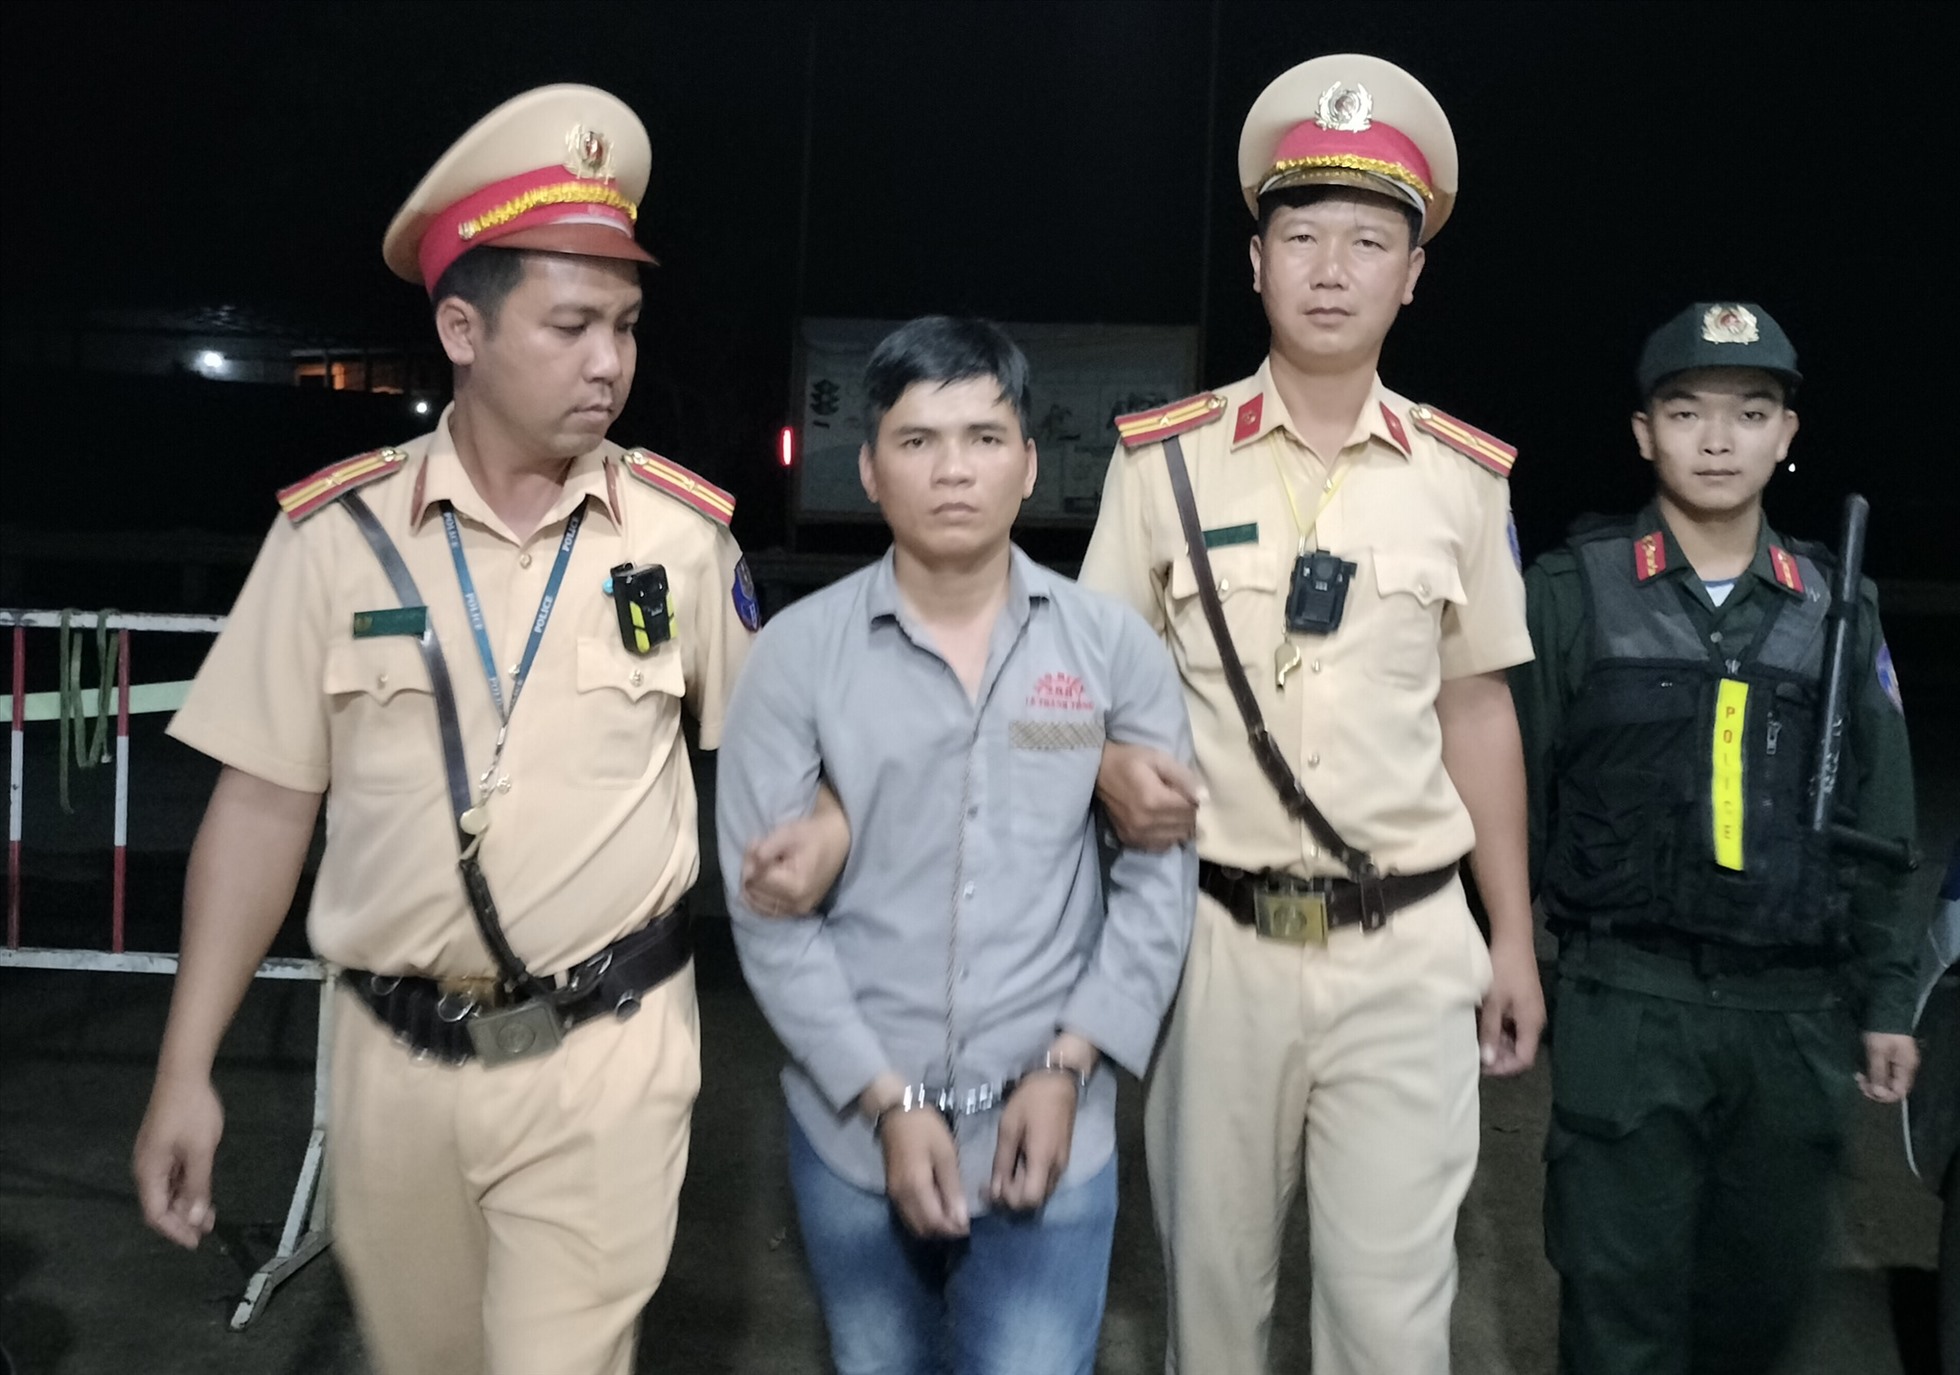 Tổ công tác thuộc Phòng Cảnh sát giao thông Công an tỉnh Đắk Nông bắt giữ đối tuợng Ngô Duy Tôn Thất Nguyên K về tội trộm cắp tài sản. Ảnh: Công an cung cấp